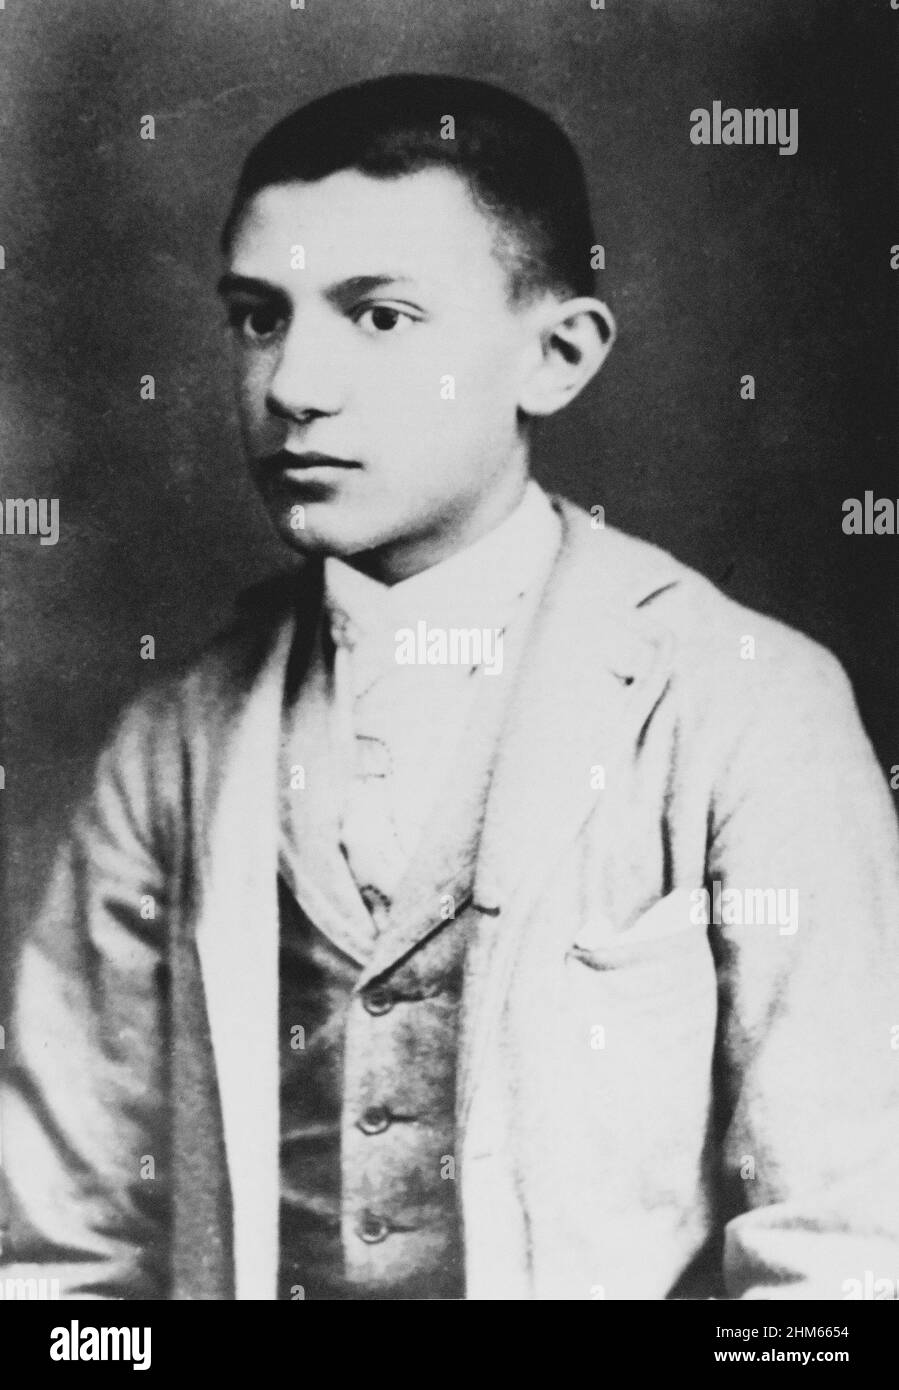 Der weltberühmte Maler Pablo Picasso im Jahr 1896, Barcelona. 15 Jahre alt Unbekannter Fotograf. Digital verbessert. Stockfoto